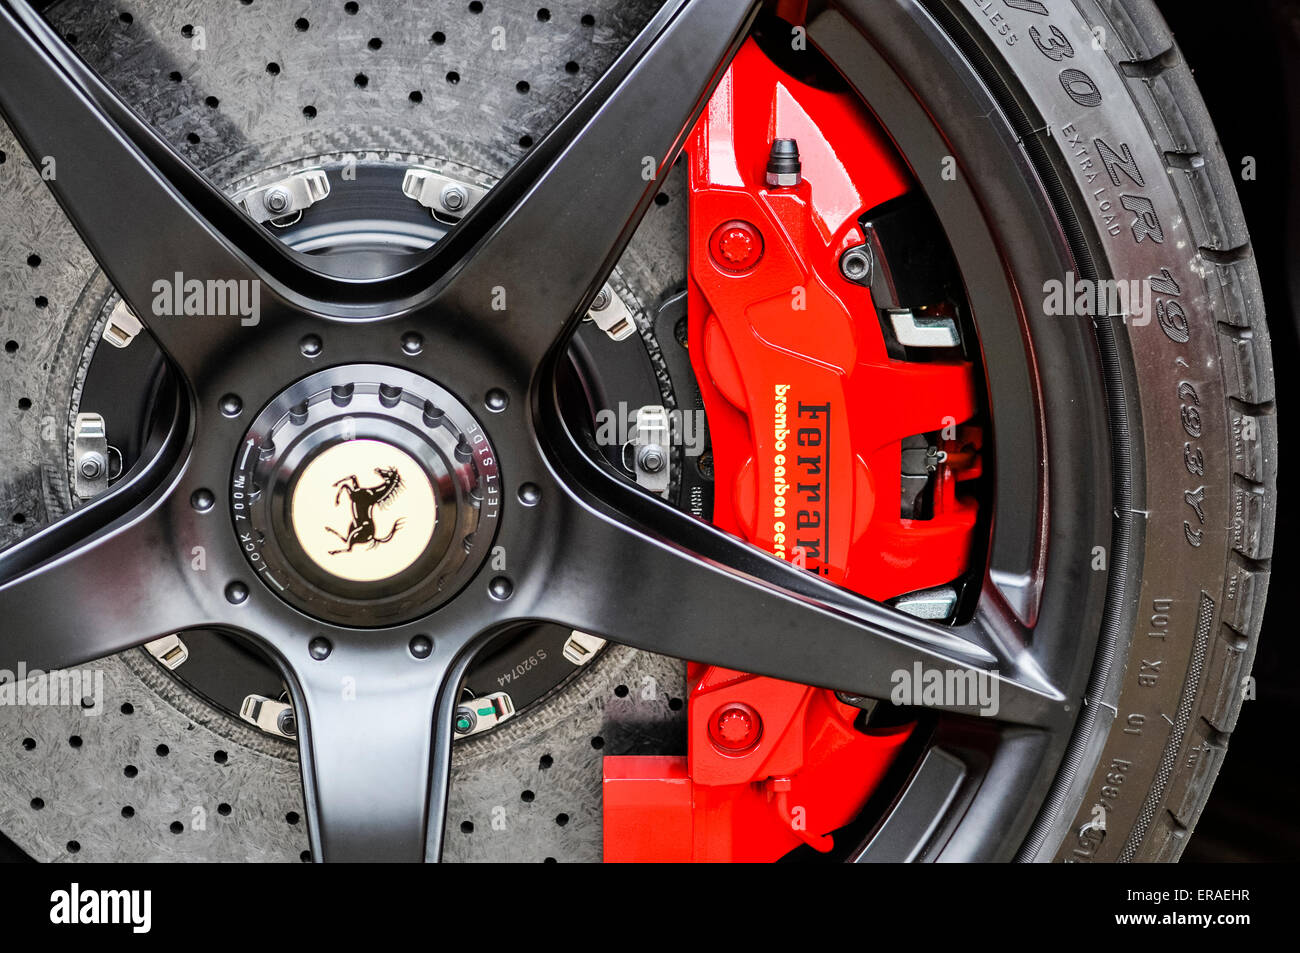 Brembo ceramic brakes on a Ferrari LaFerrari (F150) hybrid supercar Stock Photo